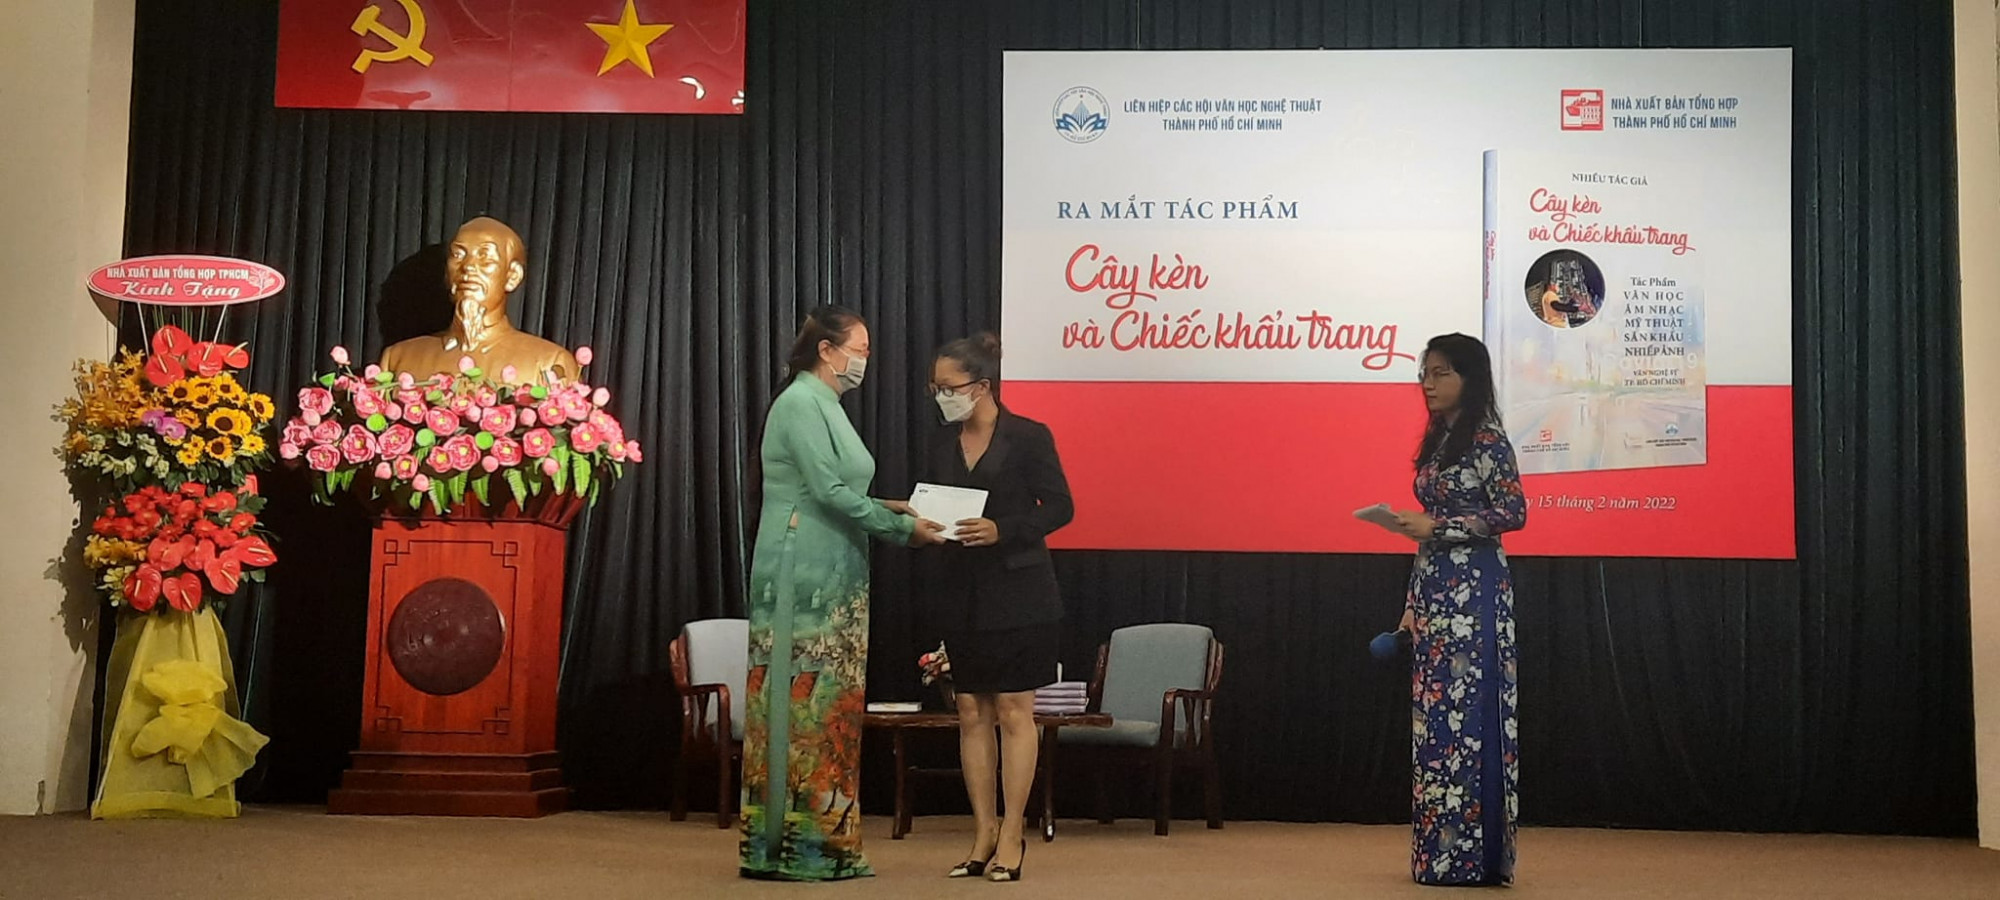 Bà Dương Cẩm Thúy, Chủ tịch Hội Điện ảnh TPHCM trao tặng qua cho gia đình cố nhạc sĩ Y Jang Tuyn